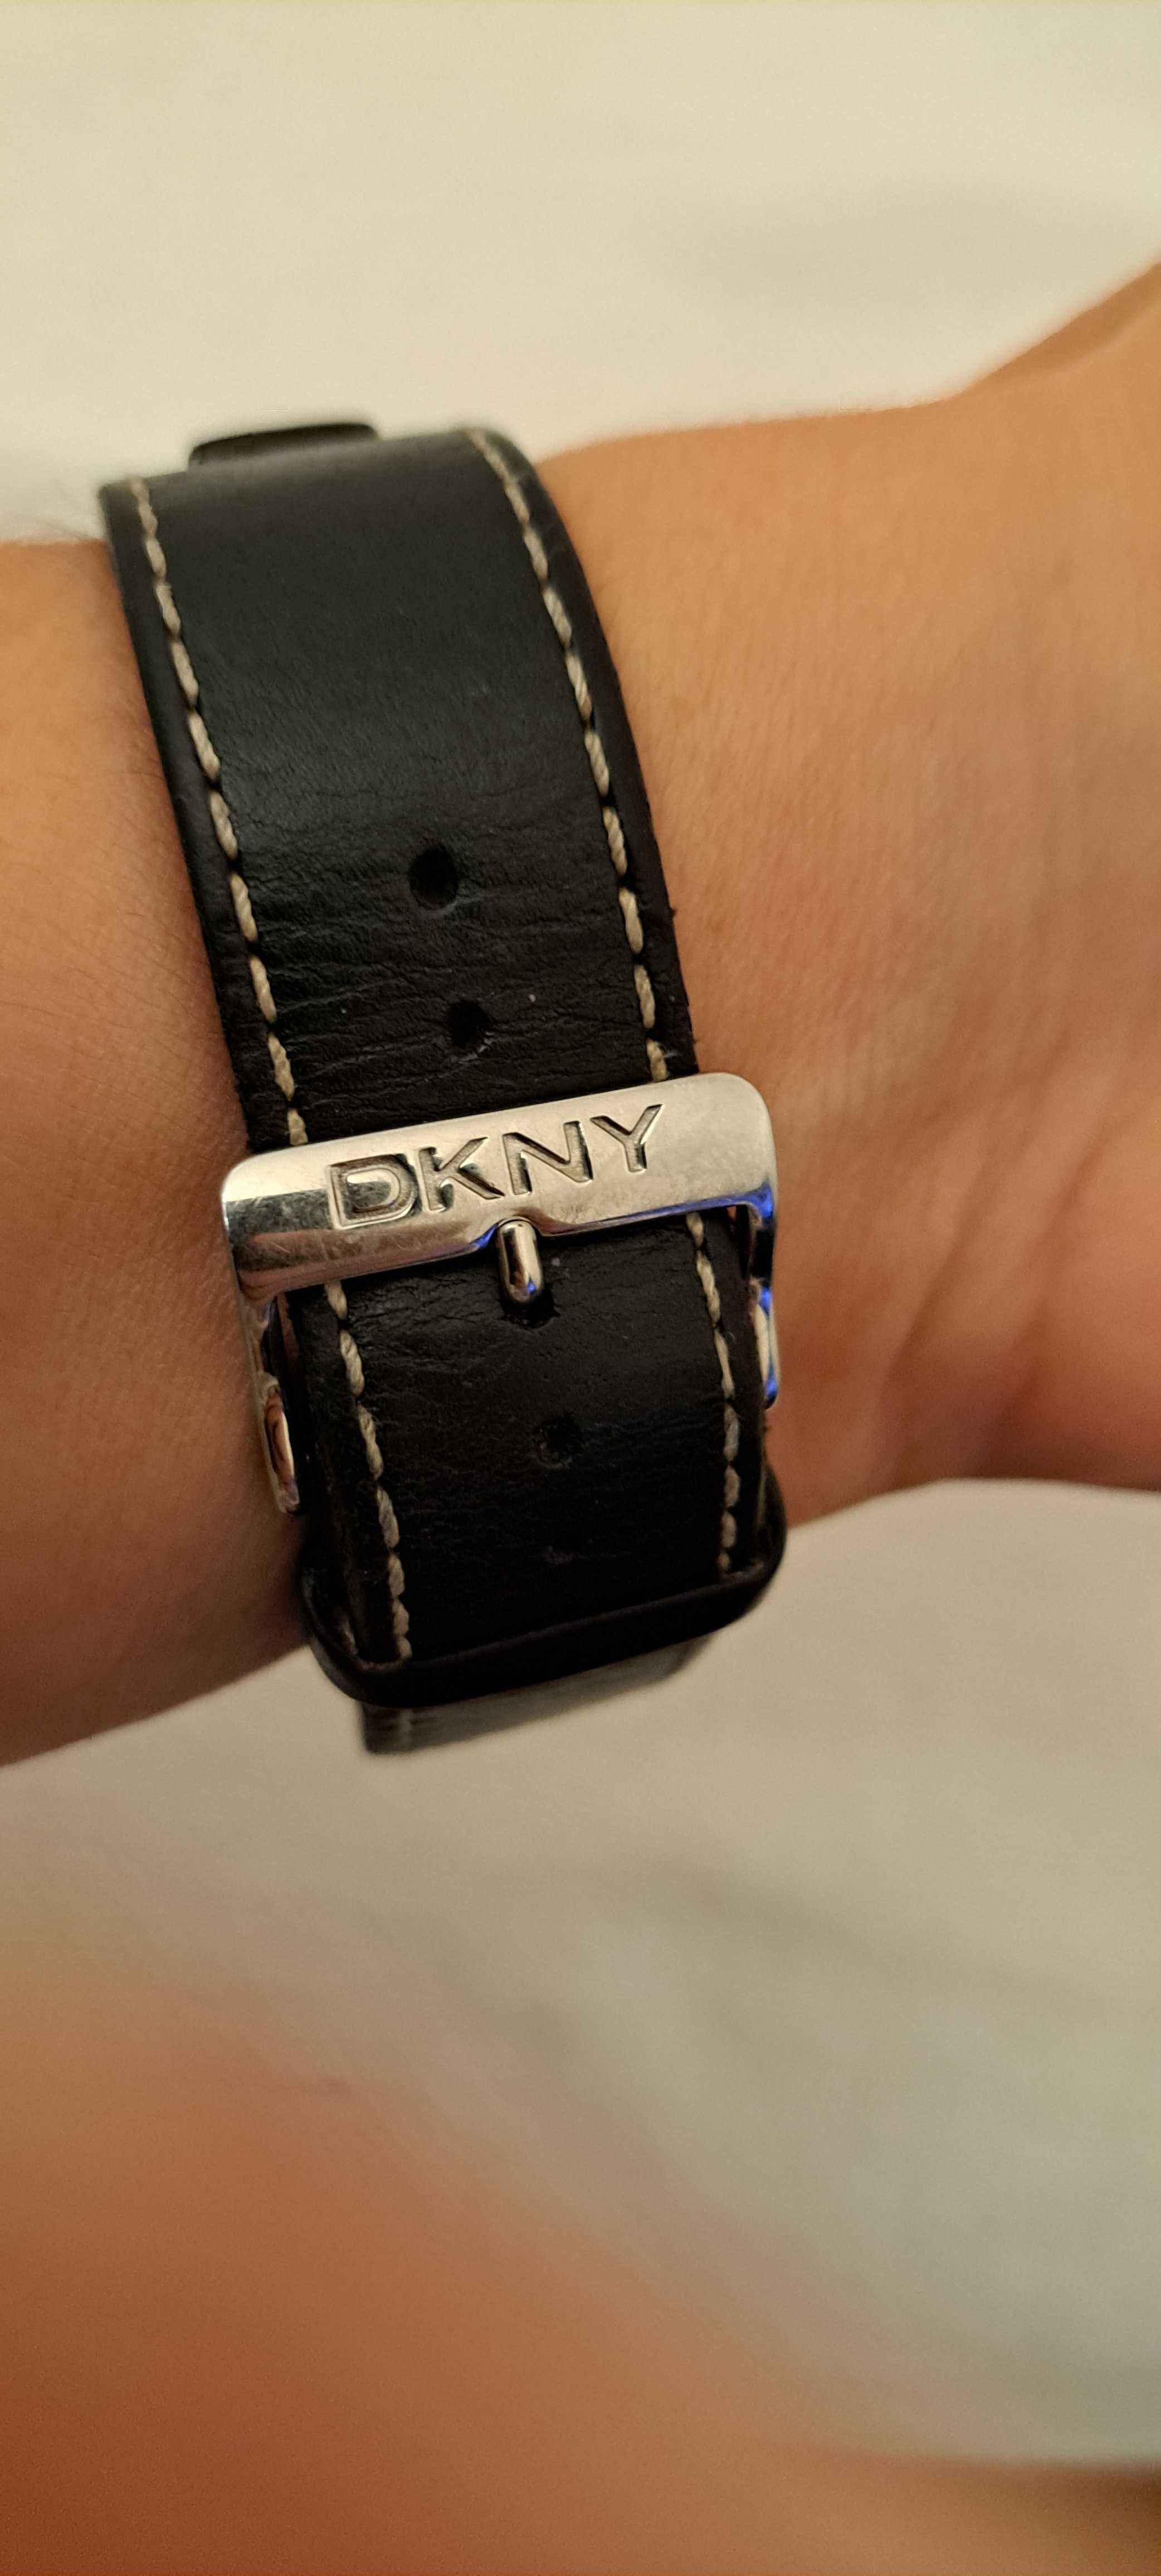 Relogio DKNY em pele. Pouco uso.